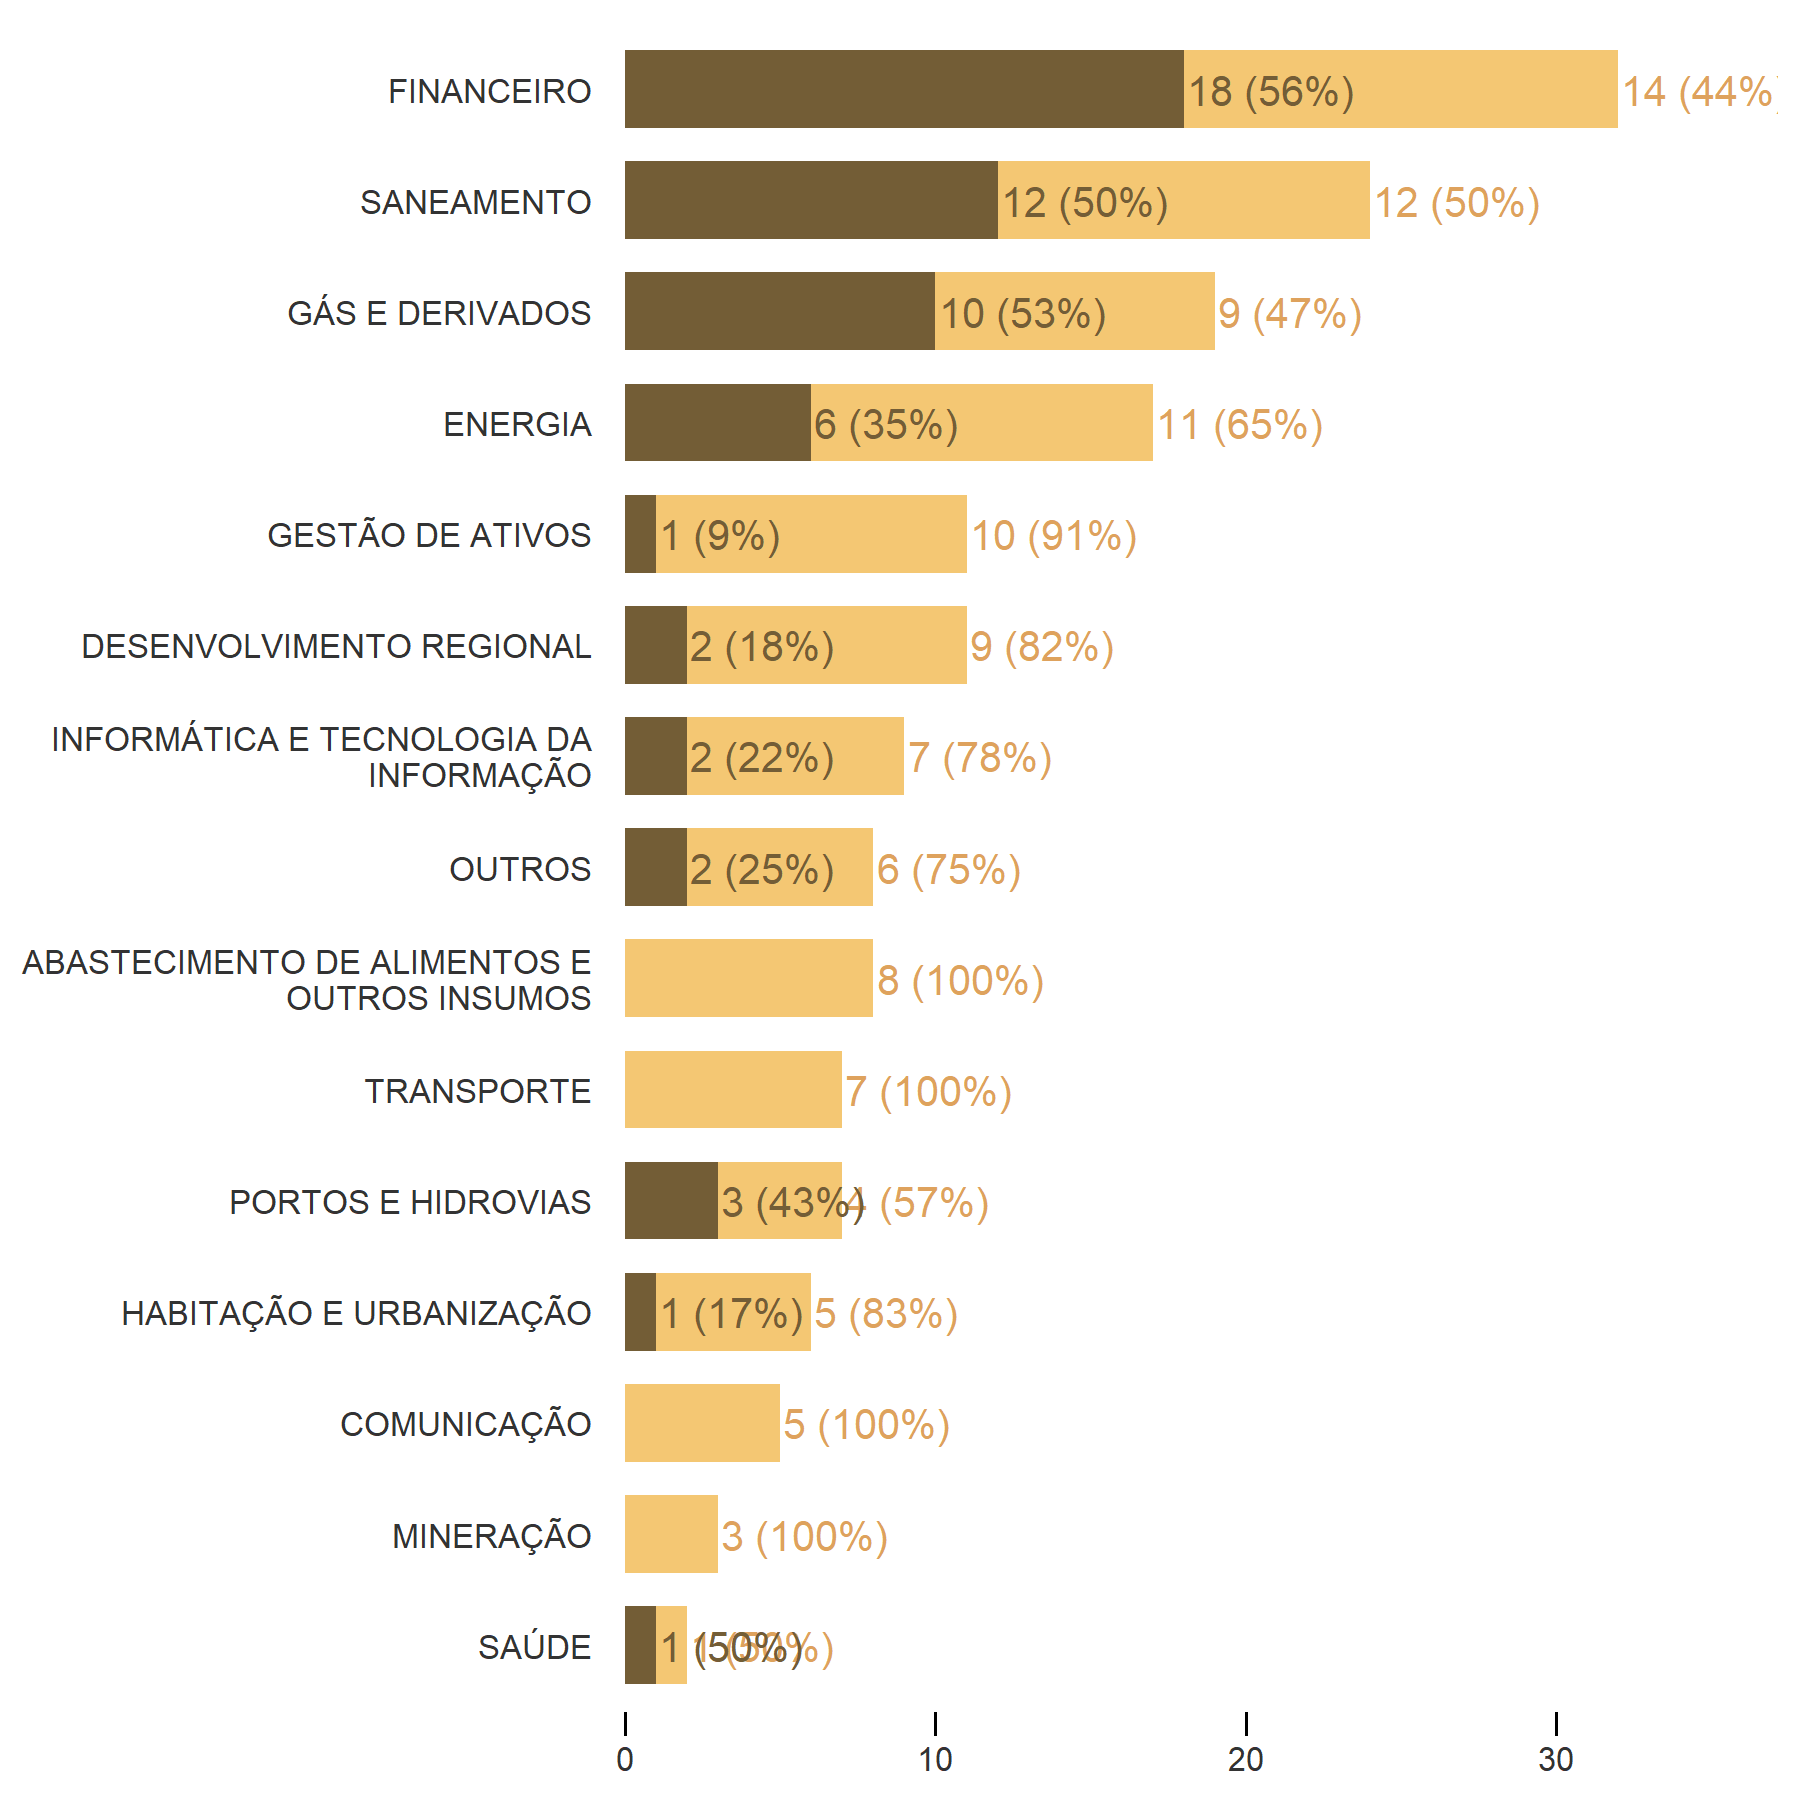 Visualização da quantidade de empresas que pagaram ou não participação nos lucros, para cada setor, na forma de um gráfico de barras empilhado.